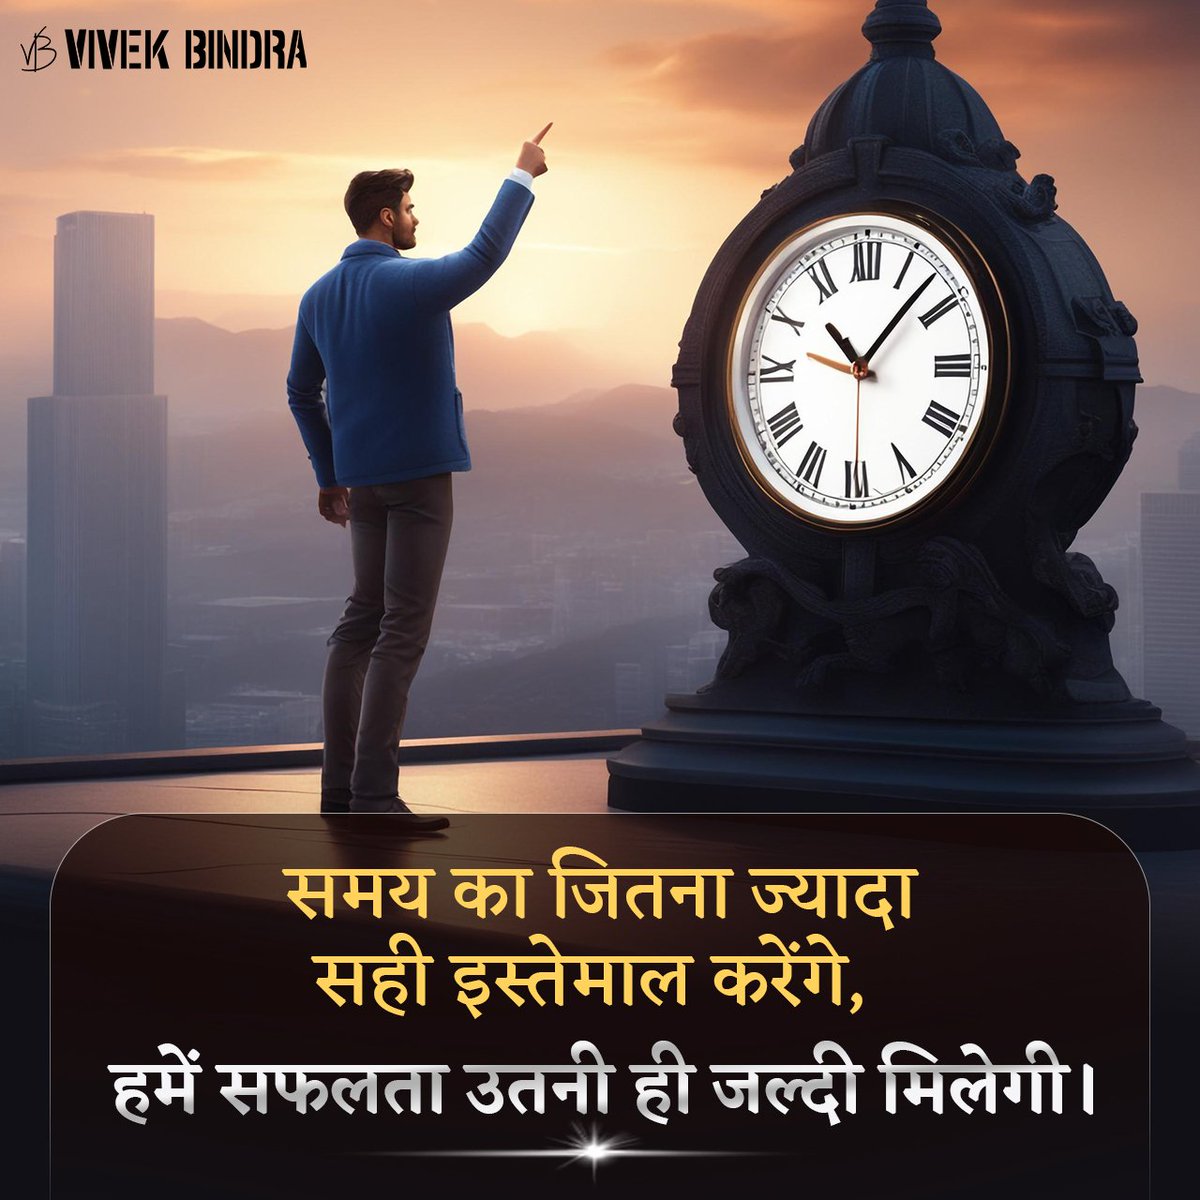 समय के सही इस्तेमाल से ही सफलता जल्दी मिल सकती है।

#Motivation #ThoughtOfTheDay #DrVivekBindra #BadaBusiness